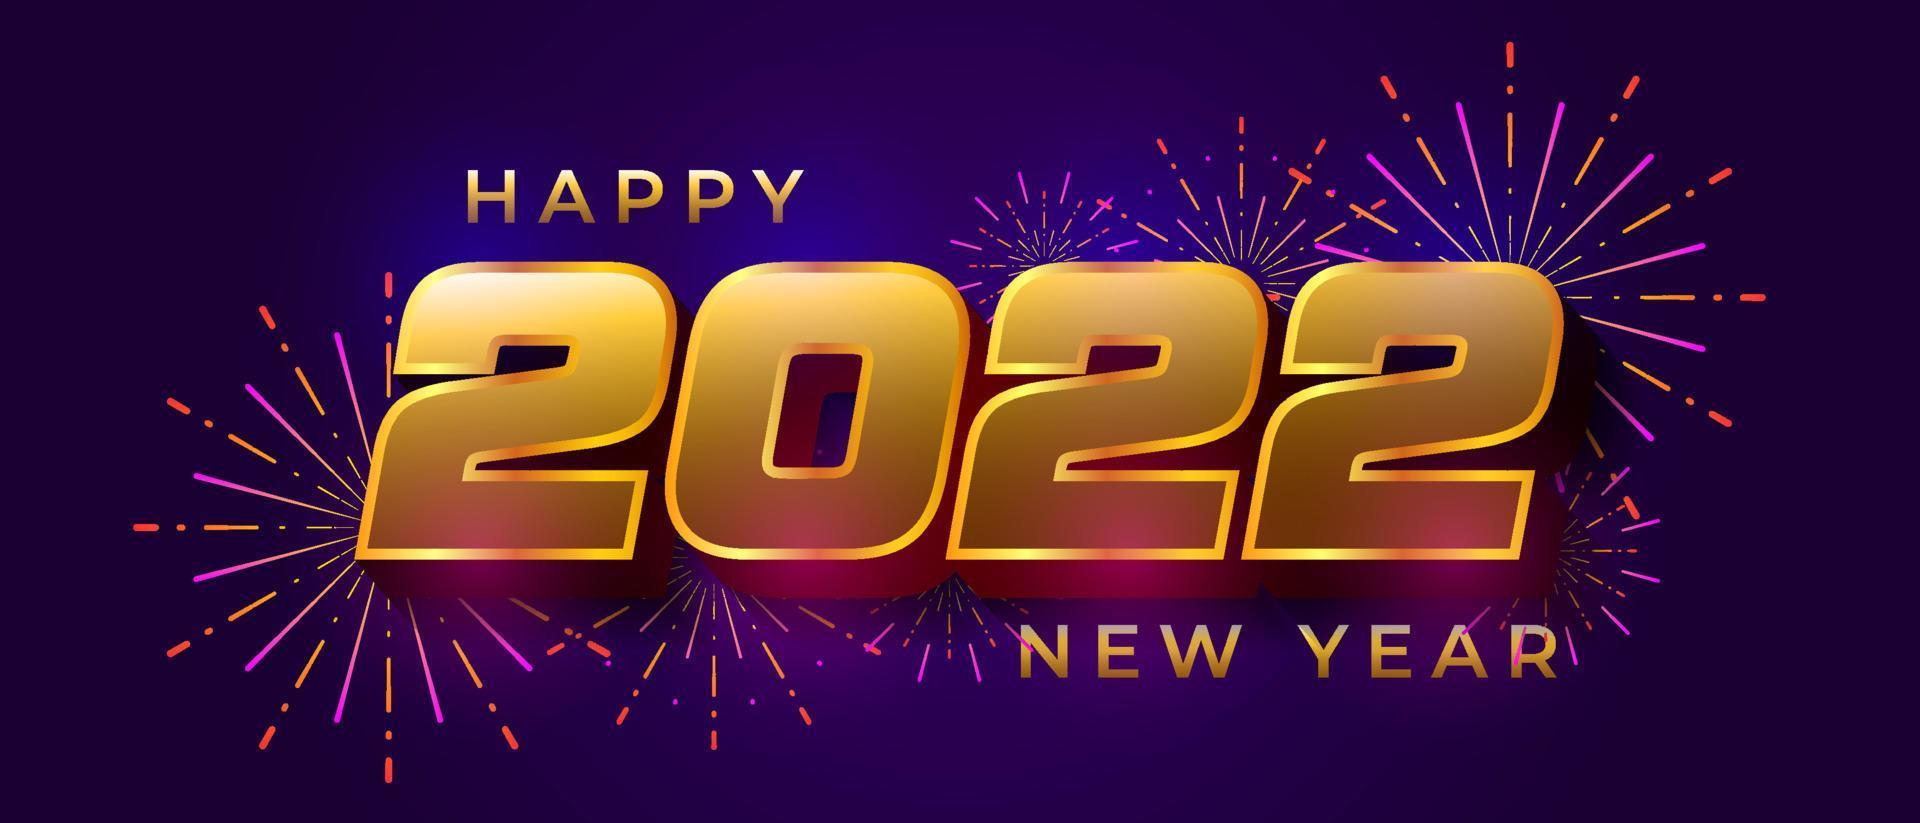 oro lucido 2022 felice anno nuovo banner disegno vettoriale